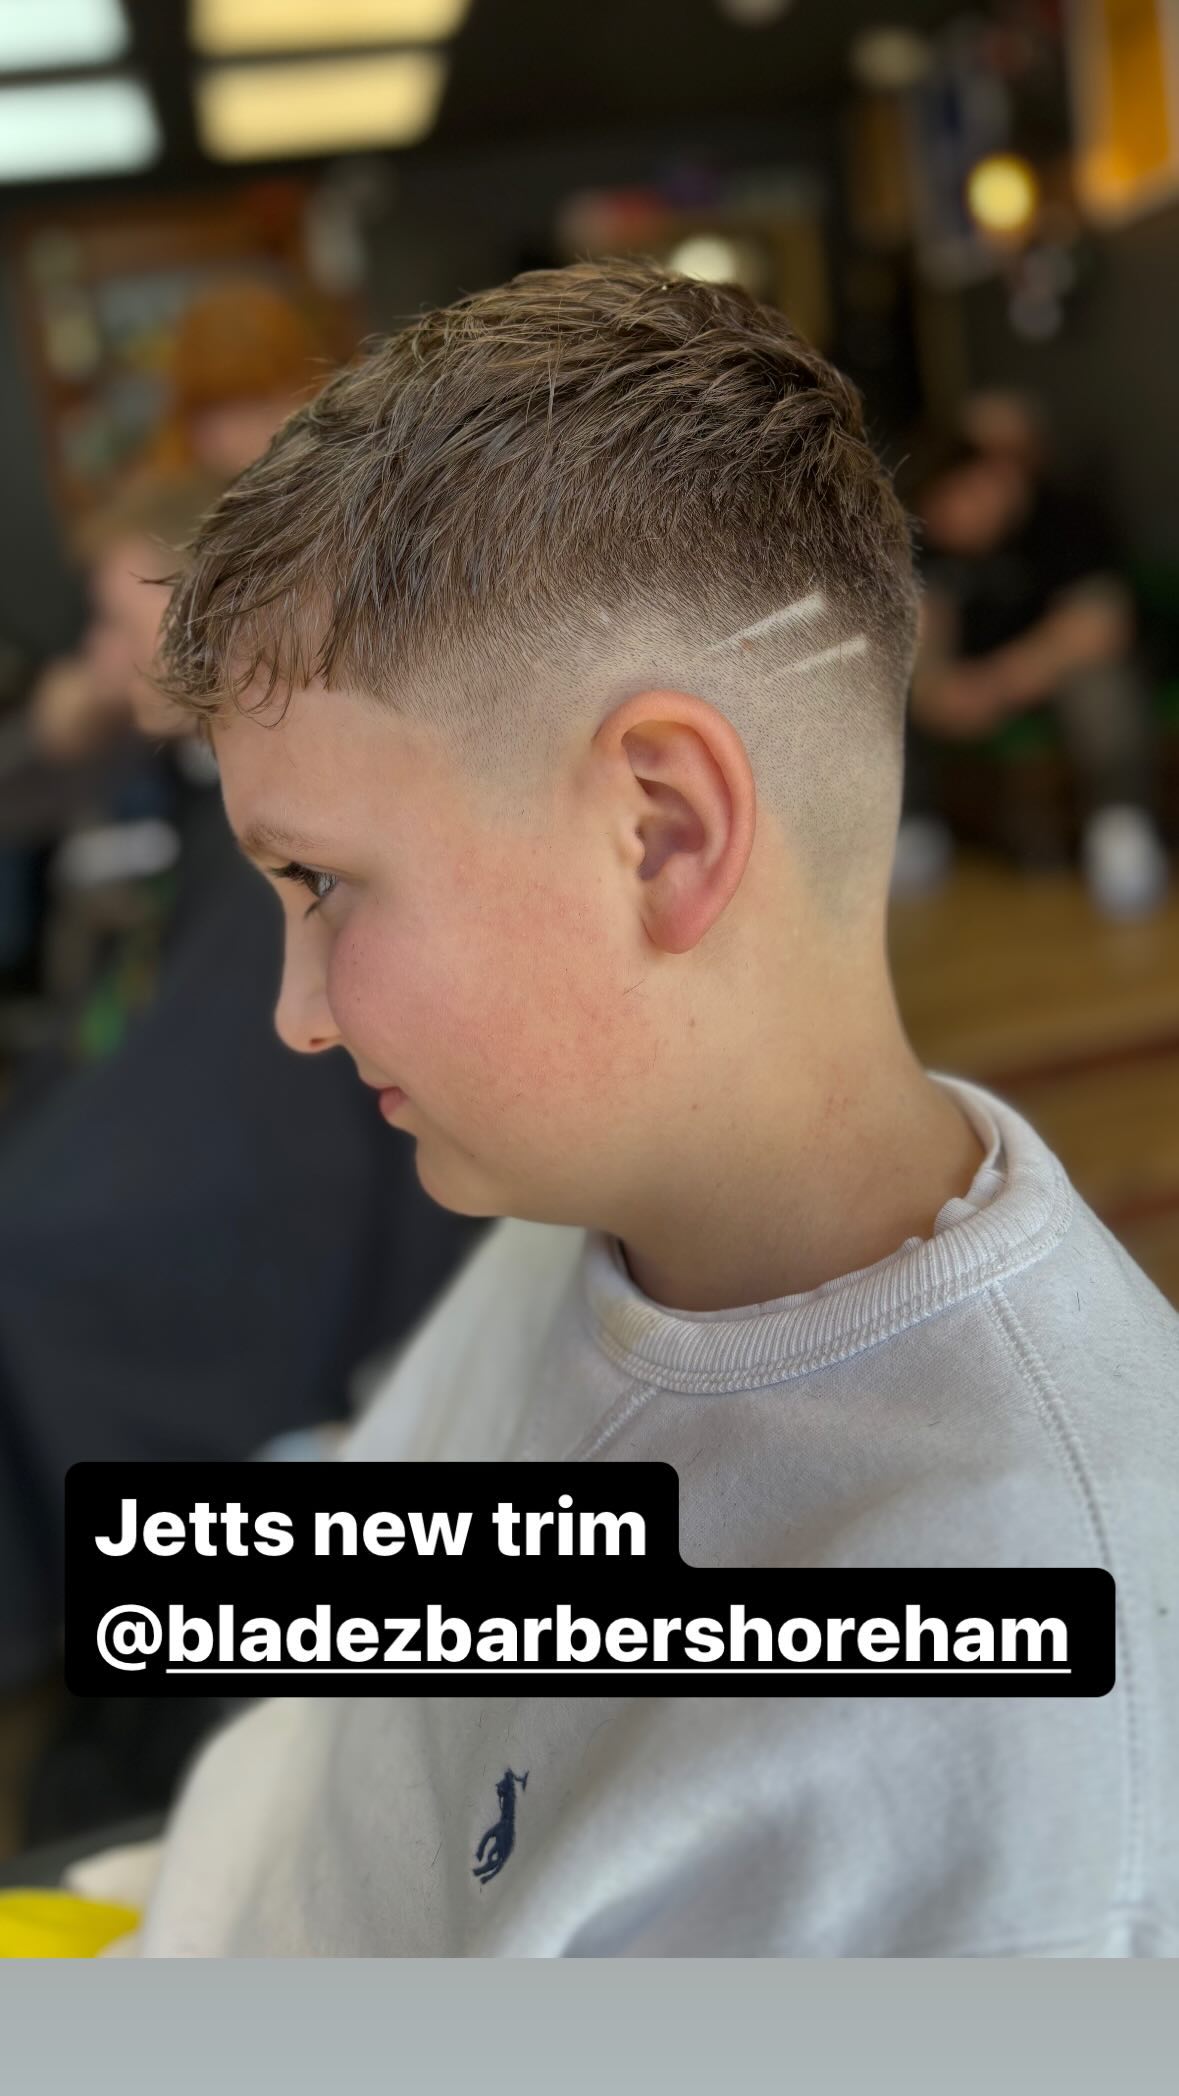 Die Mutter präsentierte Jetts neuen, ausgefallenen Haarschnitt in den sozialen Medien